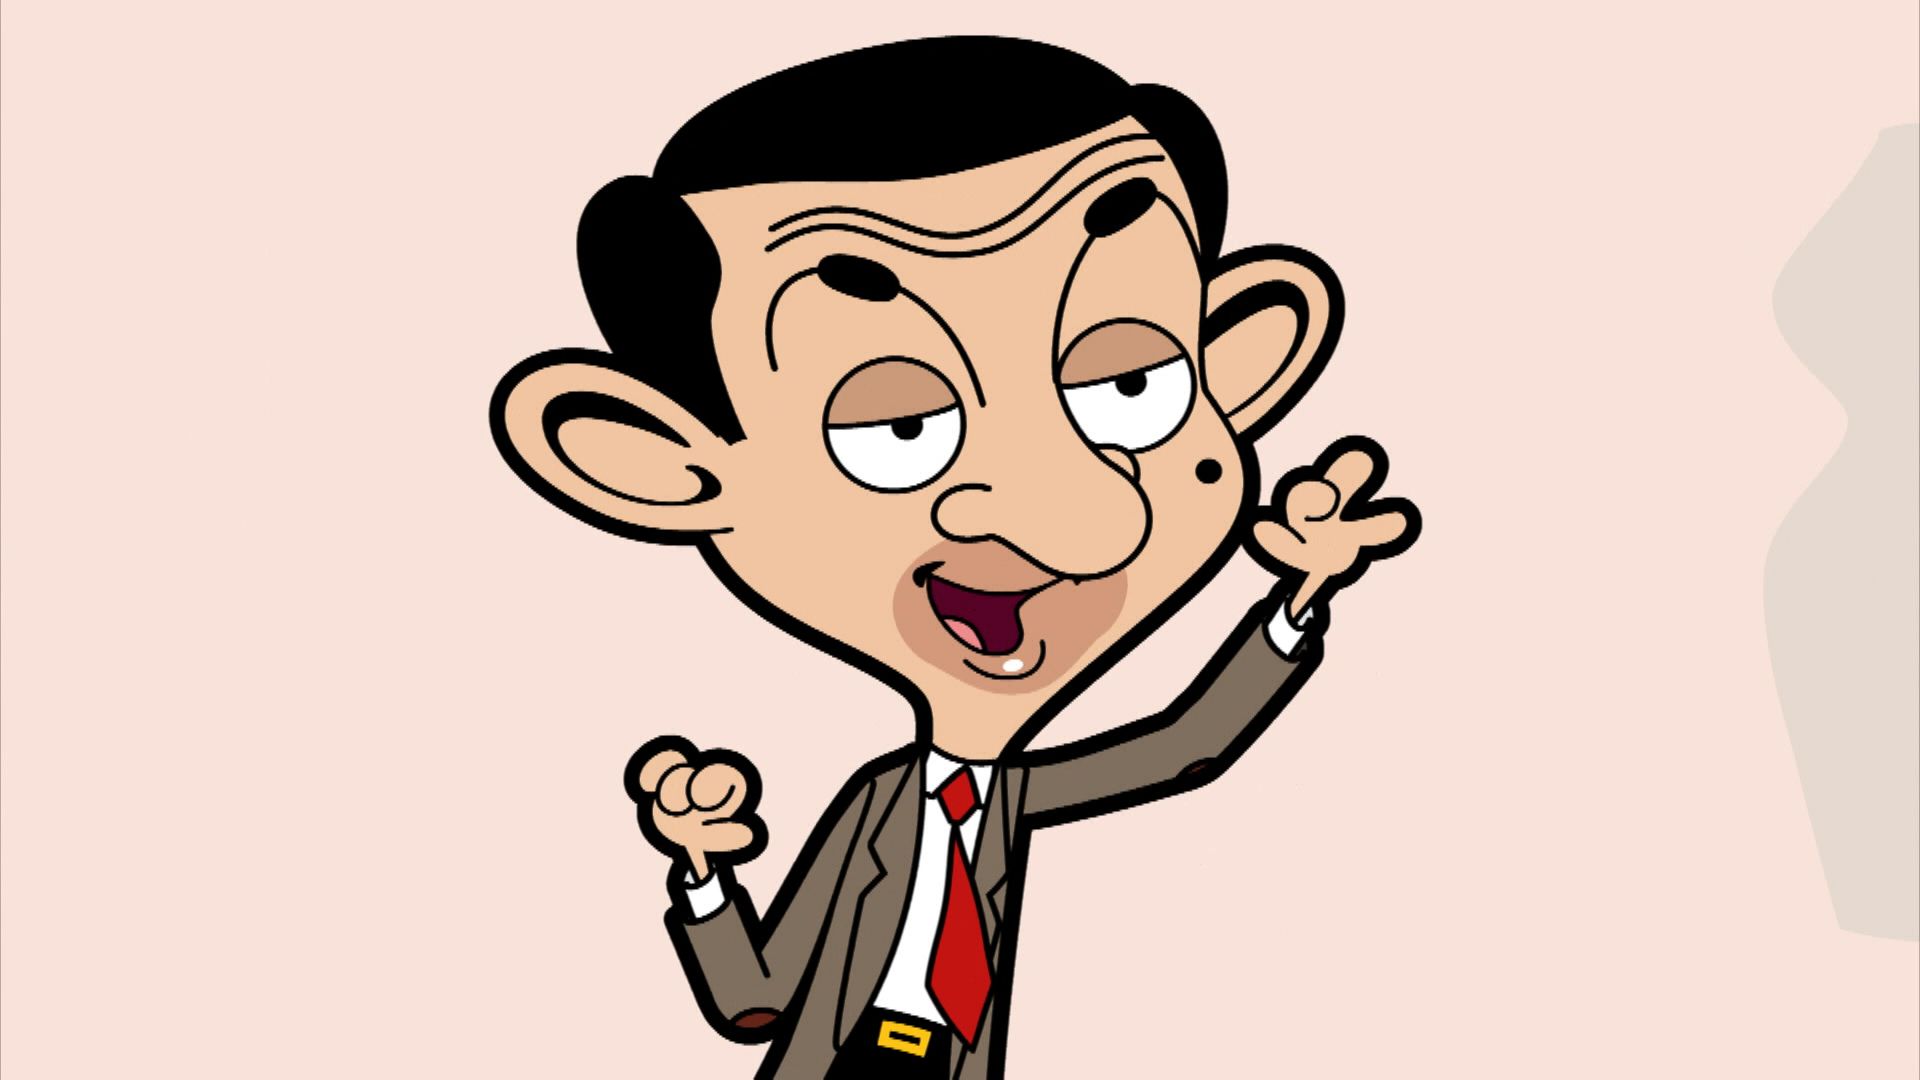 Mr Bean Caricature